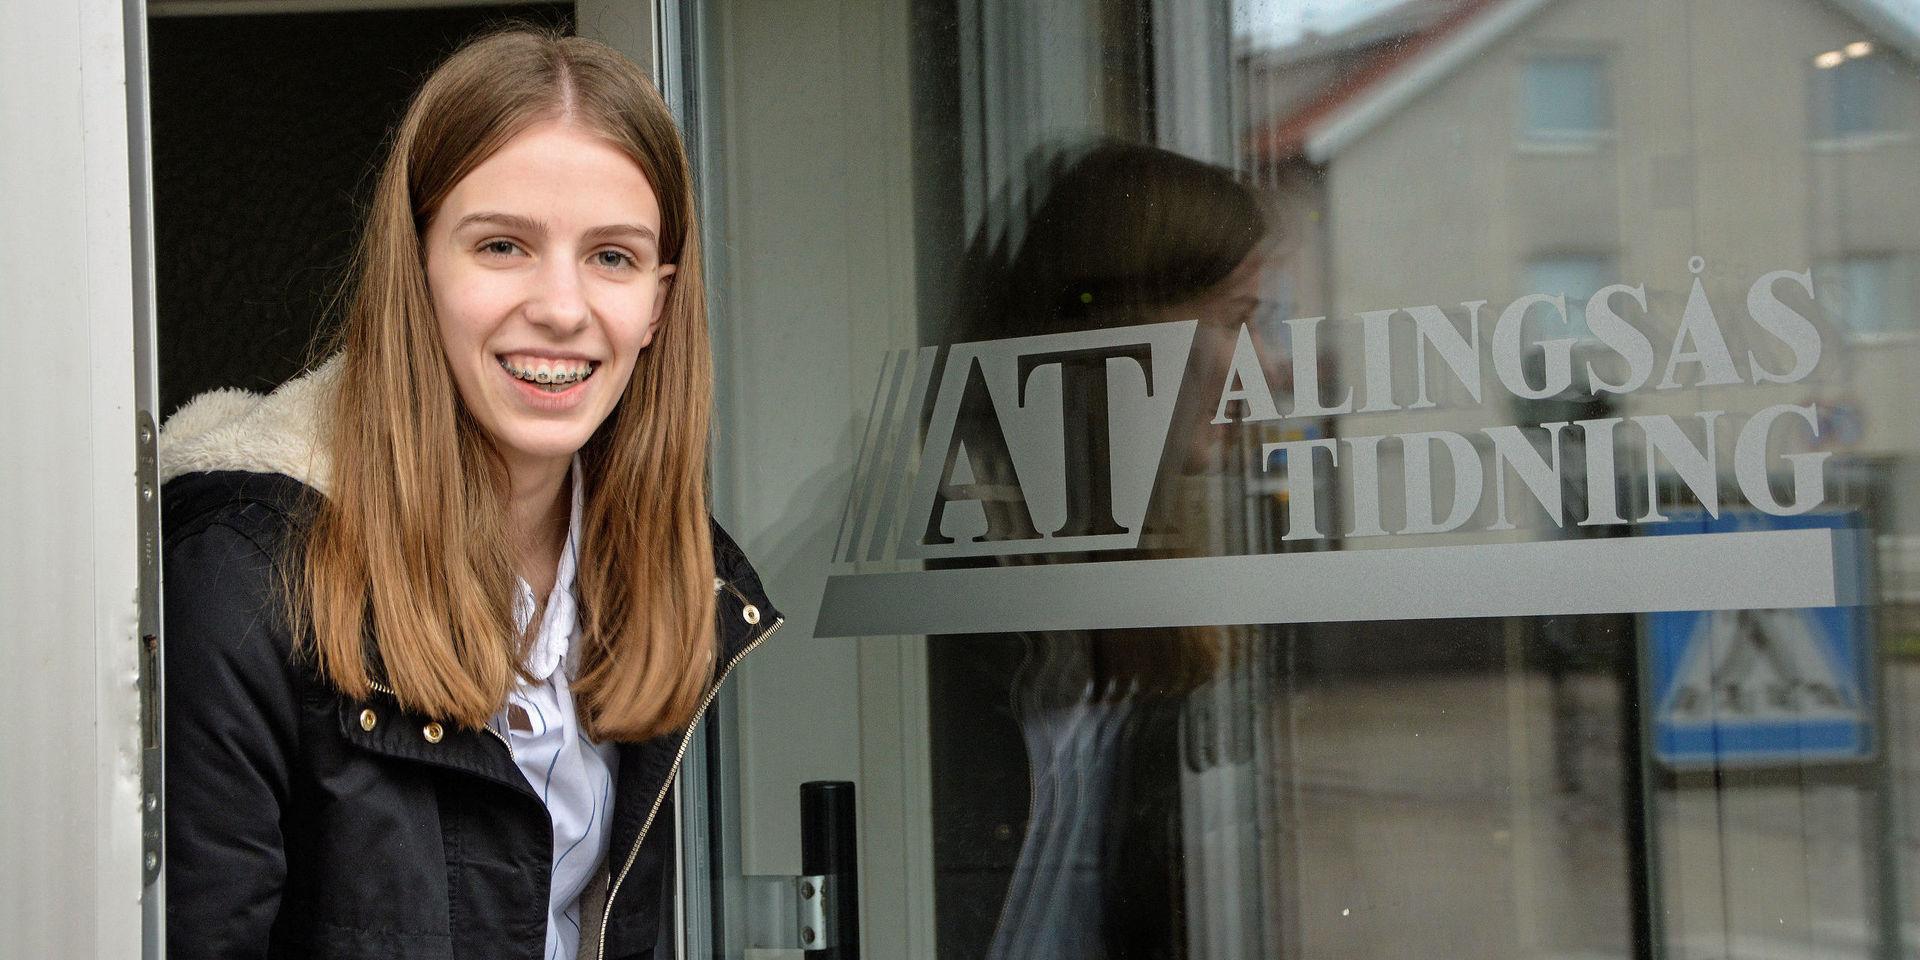 Gymnasieeleven Nelly Lisevall jobbskuggade två av AT:s reportrar under förra veckan. 